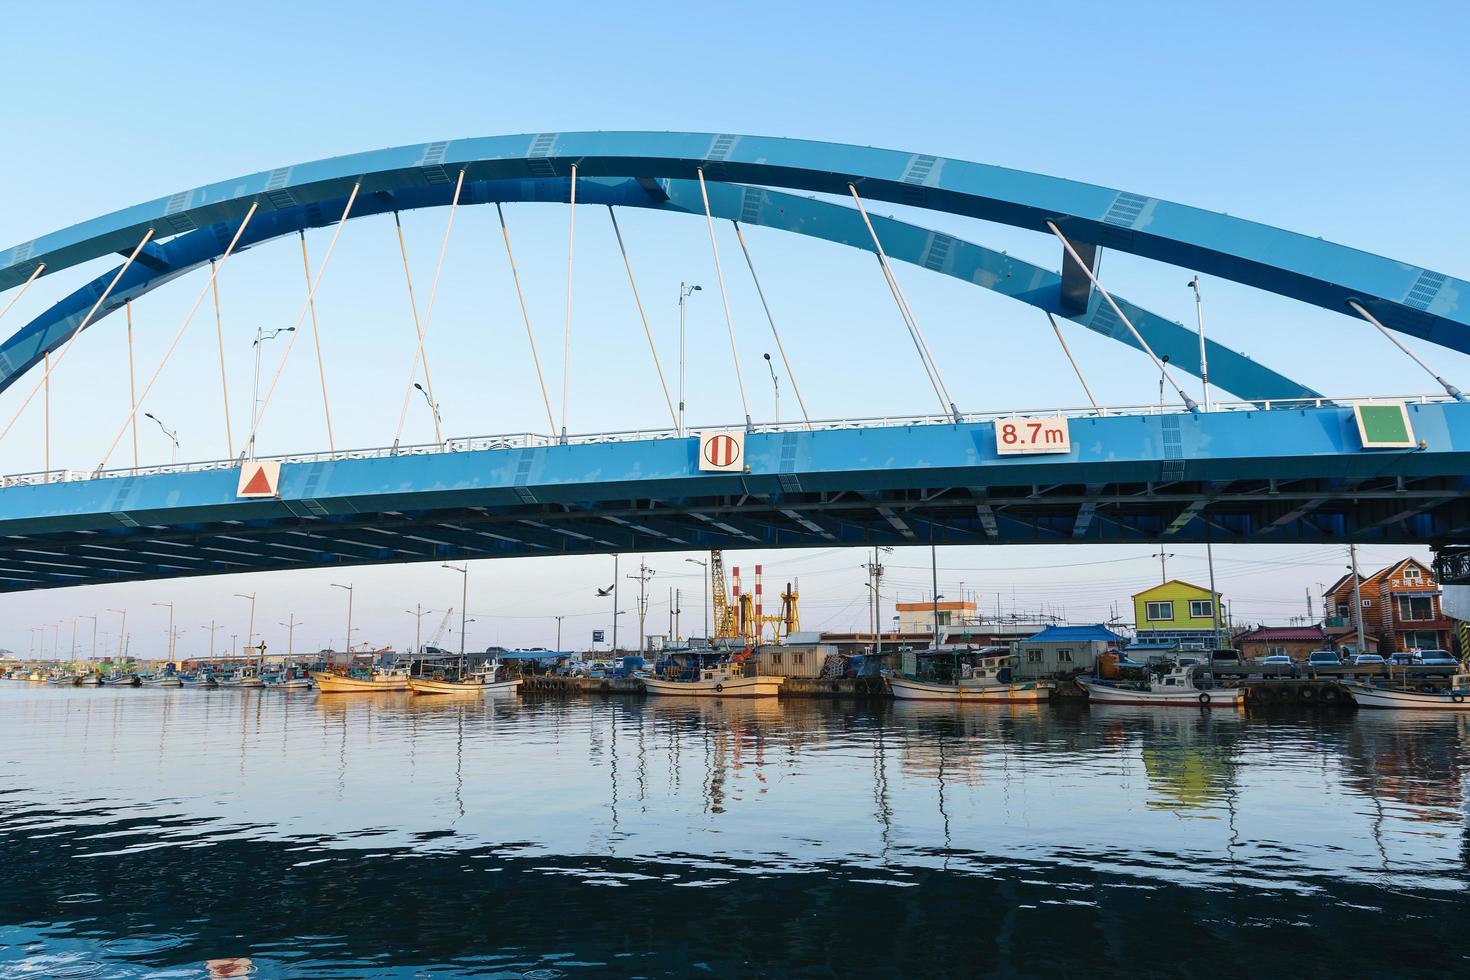 seoul, corea 2016- ponte sul fiume al villaggio di pescatori in corea foto